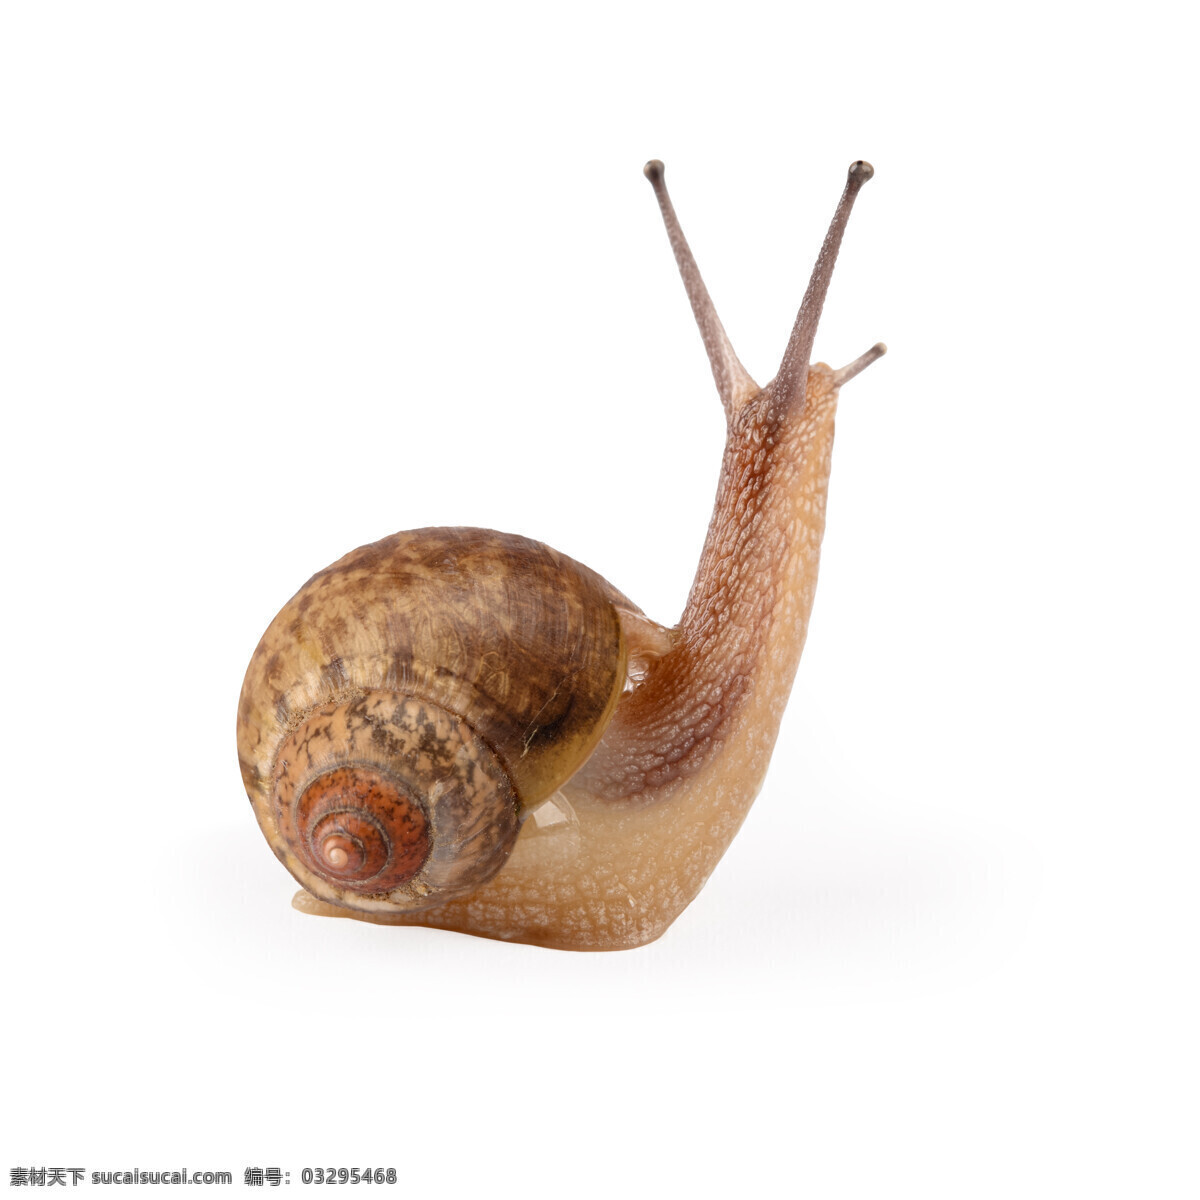 一只蜗牛 蜗牛 动物 爬行 无脊椎动物 花纹 触角 贝壳 昆虫世界 生物世界 白色